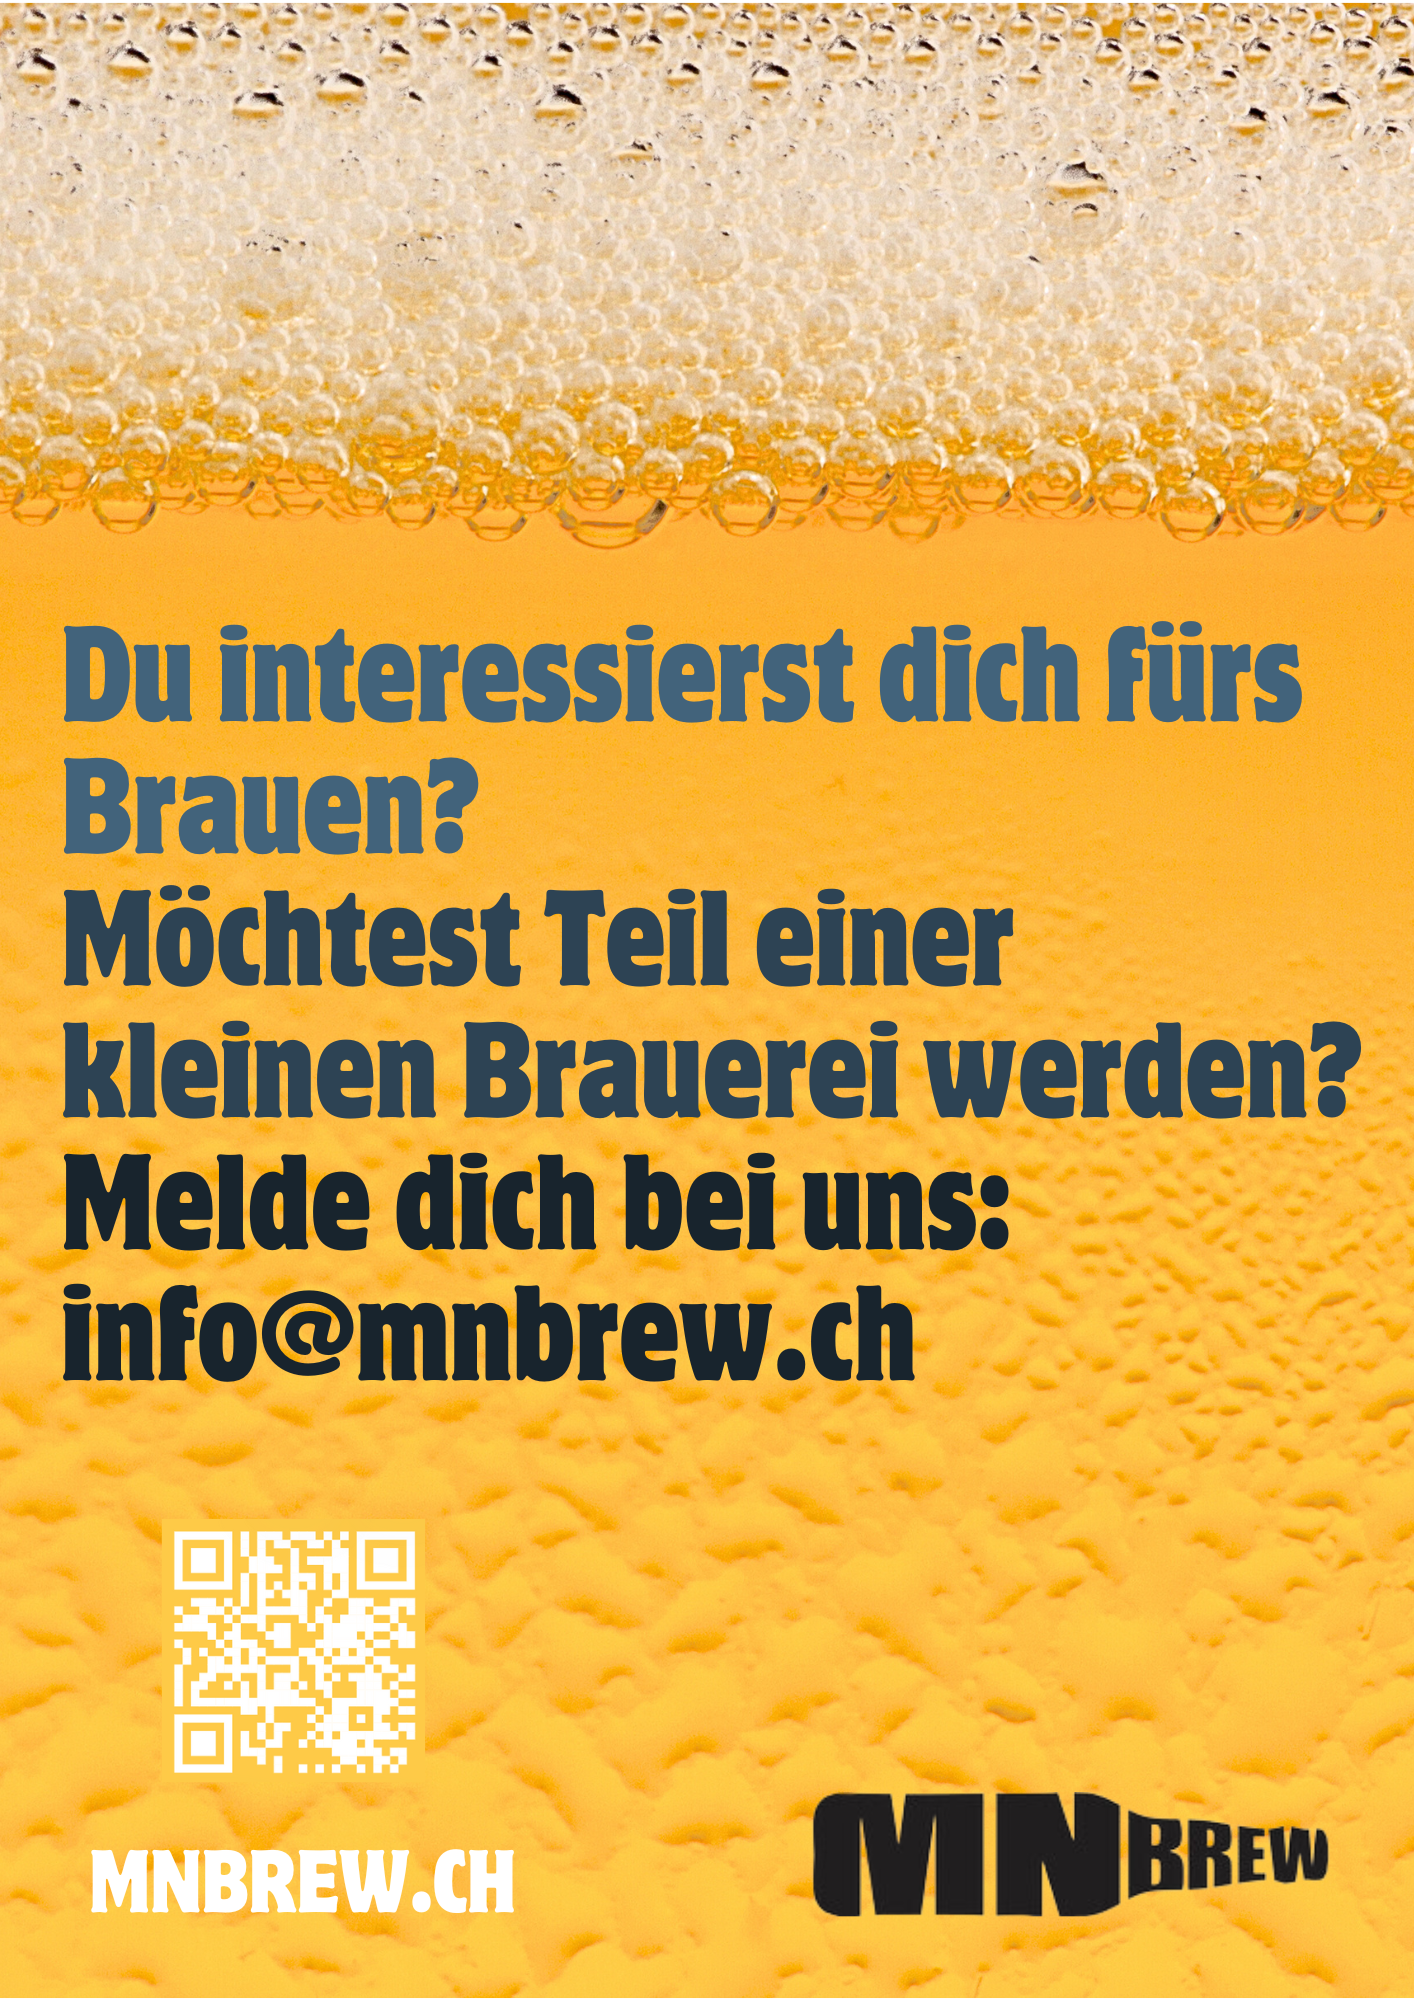 (c) Mnbrew.ch